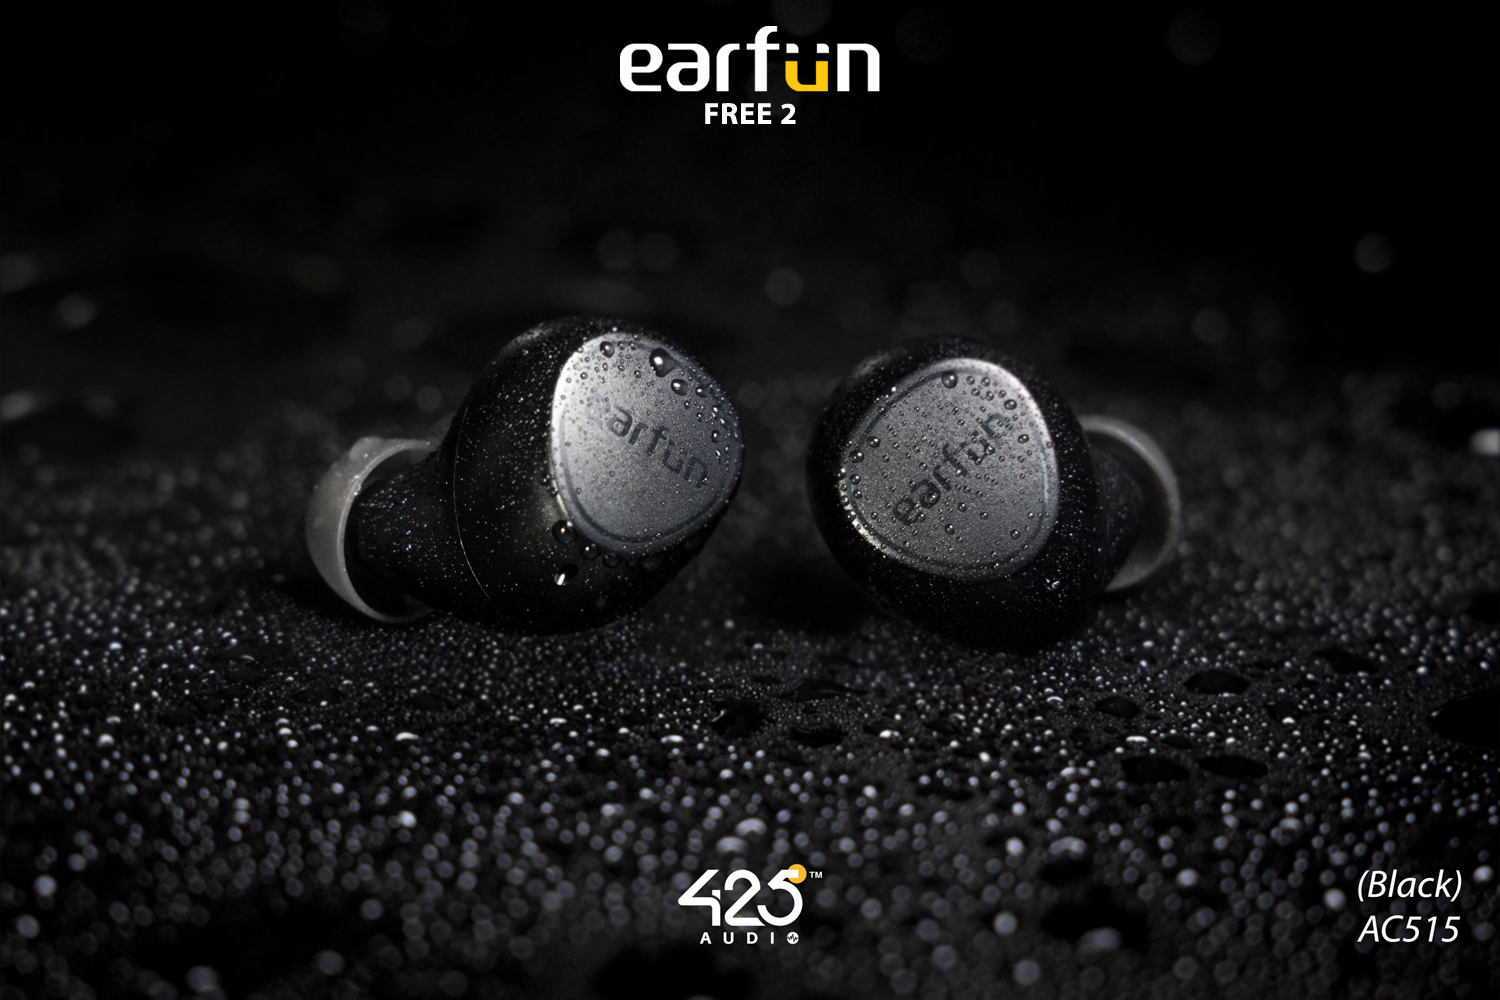 Earfun Free 2,true wireless,earbuds,หูฟังไร้สาย,หูฟังบลูทูธ,earfun free 2,free 2,earfun